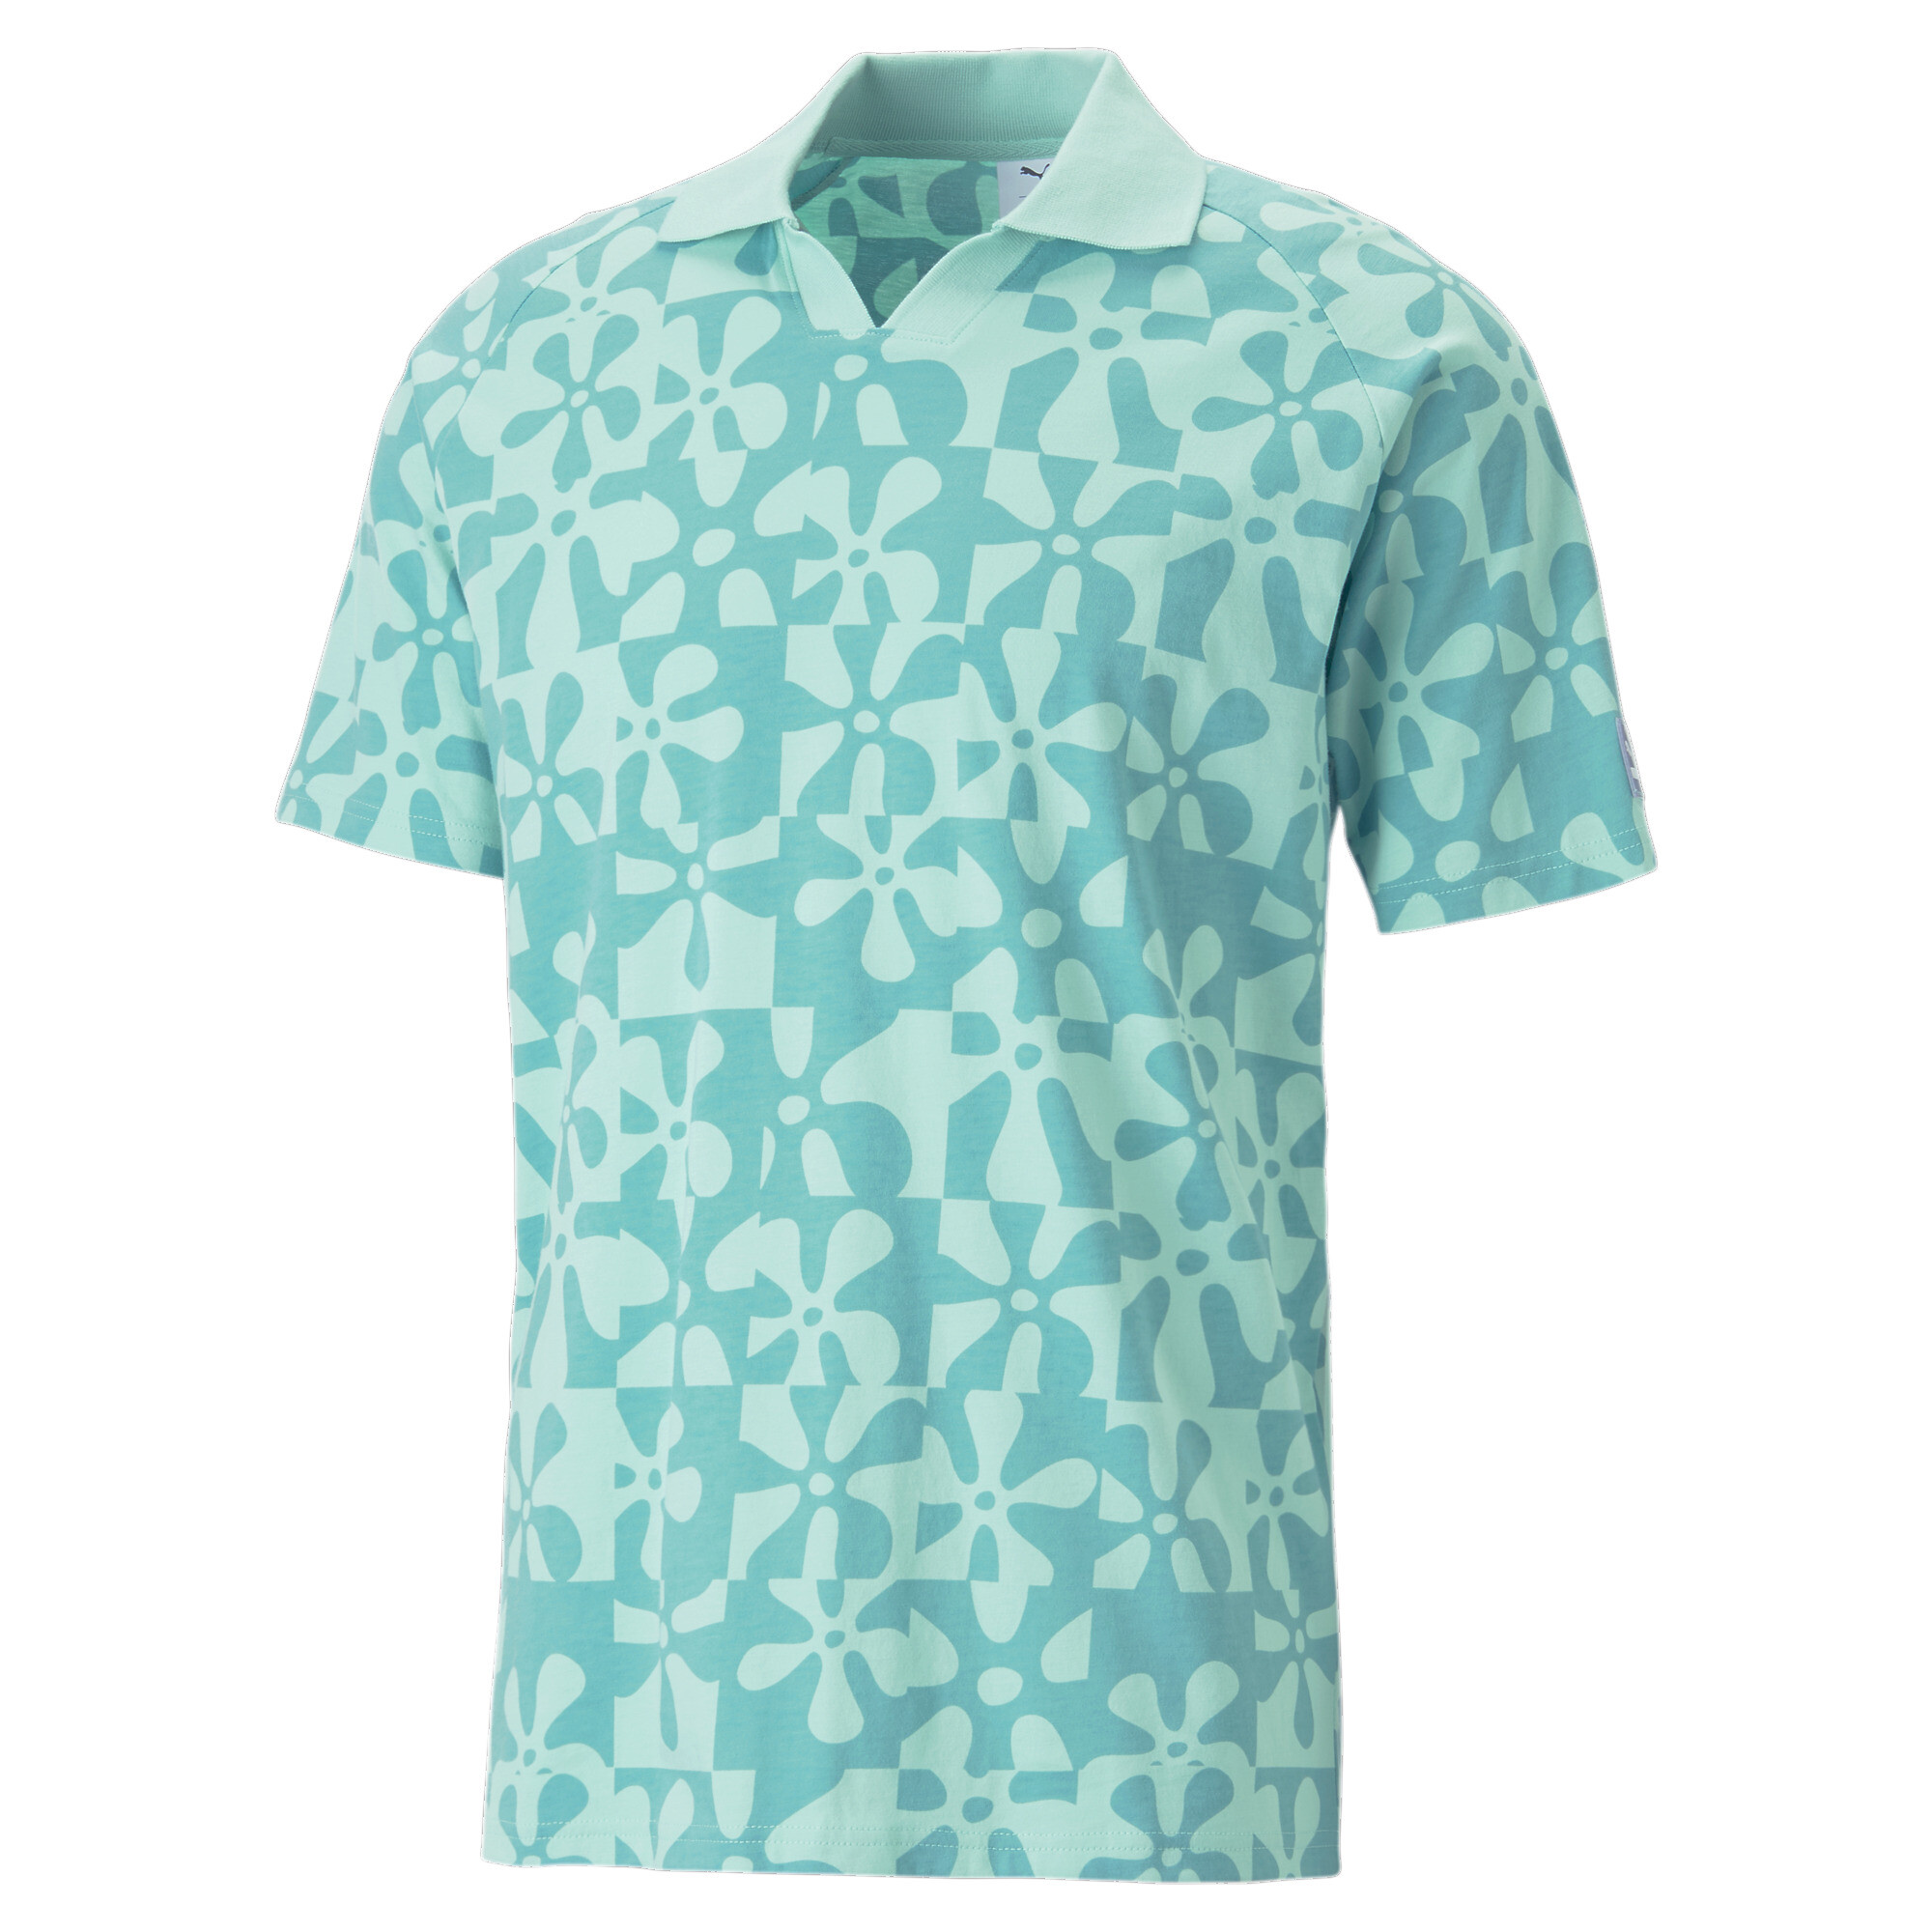 ＜プーマ公式通販＞ プーマ メンズ ゴルフ PUMA × LIBERTY ポロシャツ 2 メンズ Green Fog-Navy Blazer ｜PUMA.com